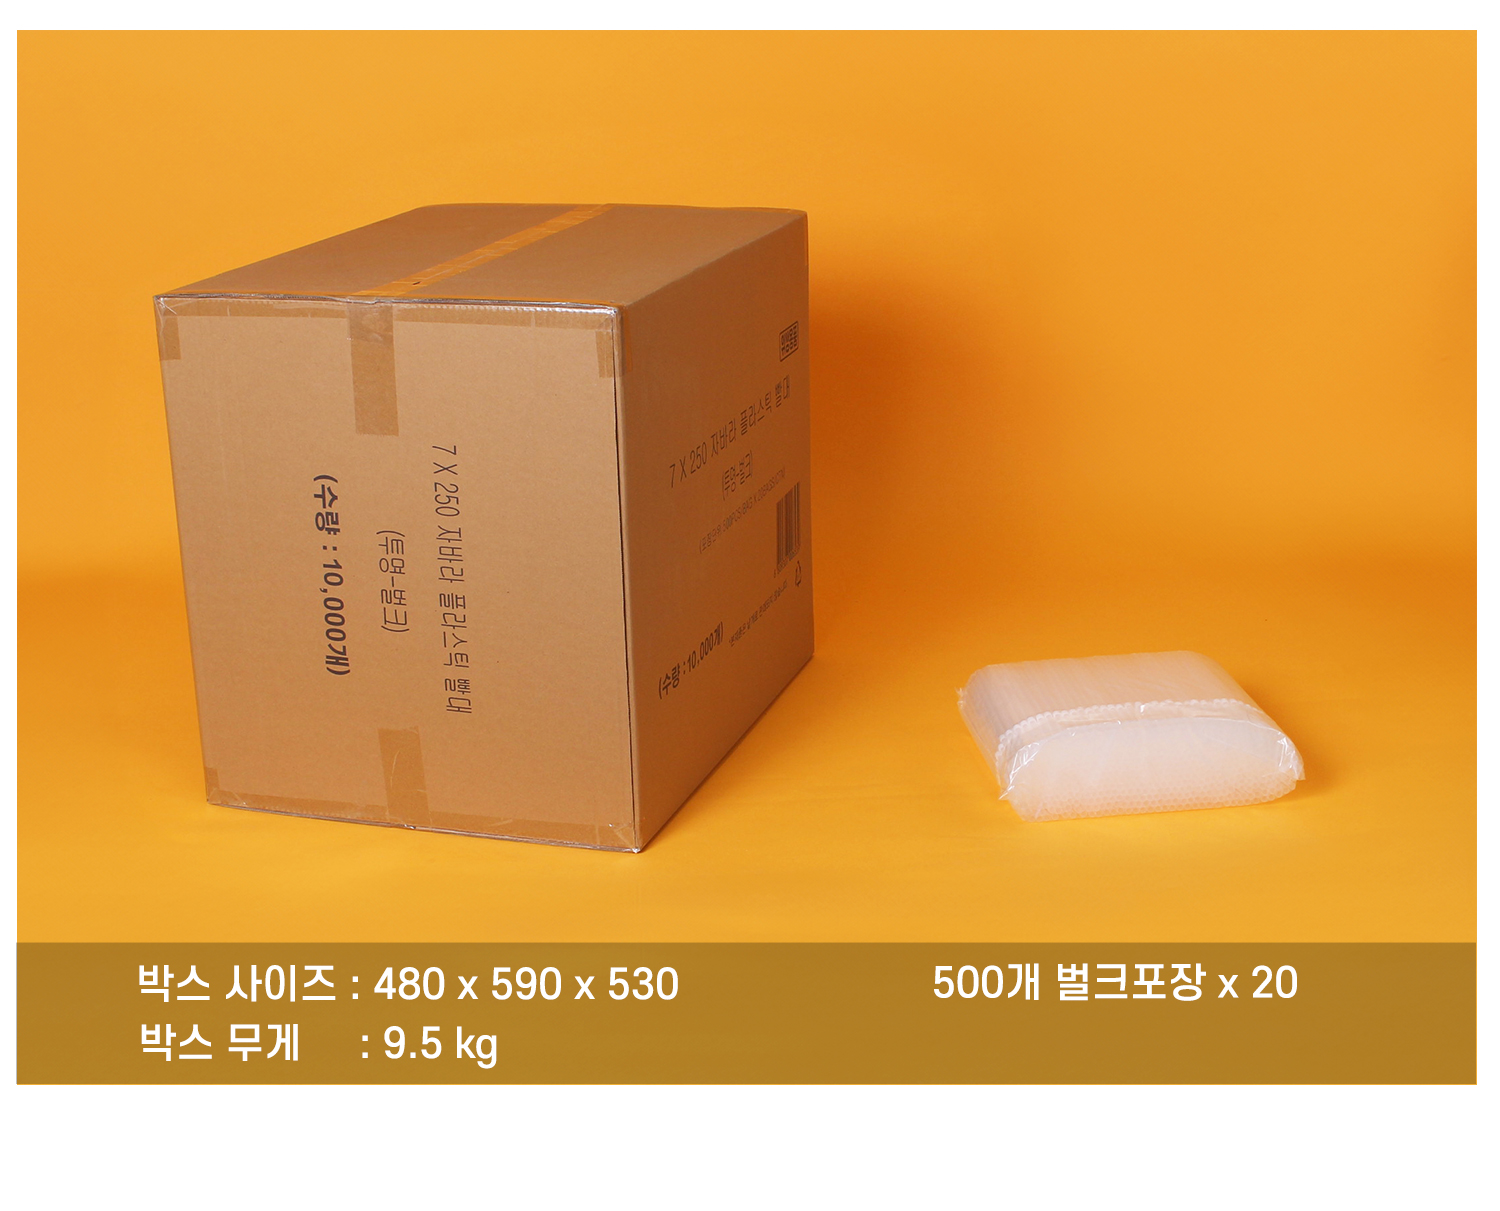 플라스틱자바라빨대의 배송되는 박스와 소포장된 단위가 보이는 이미지